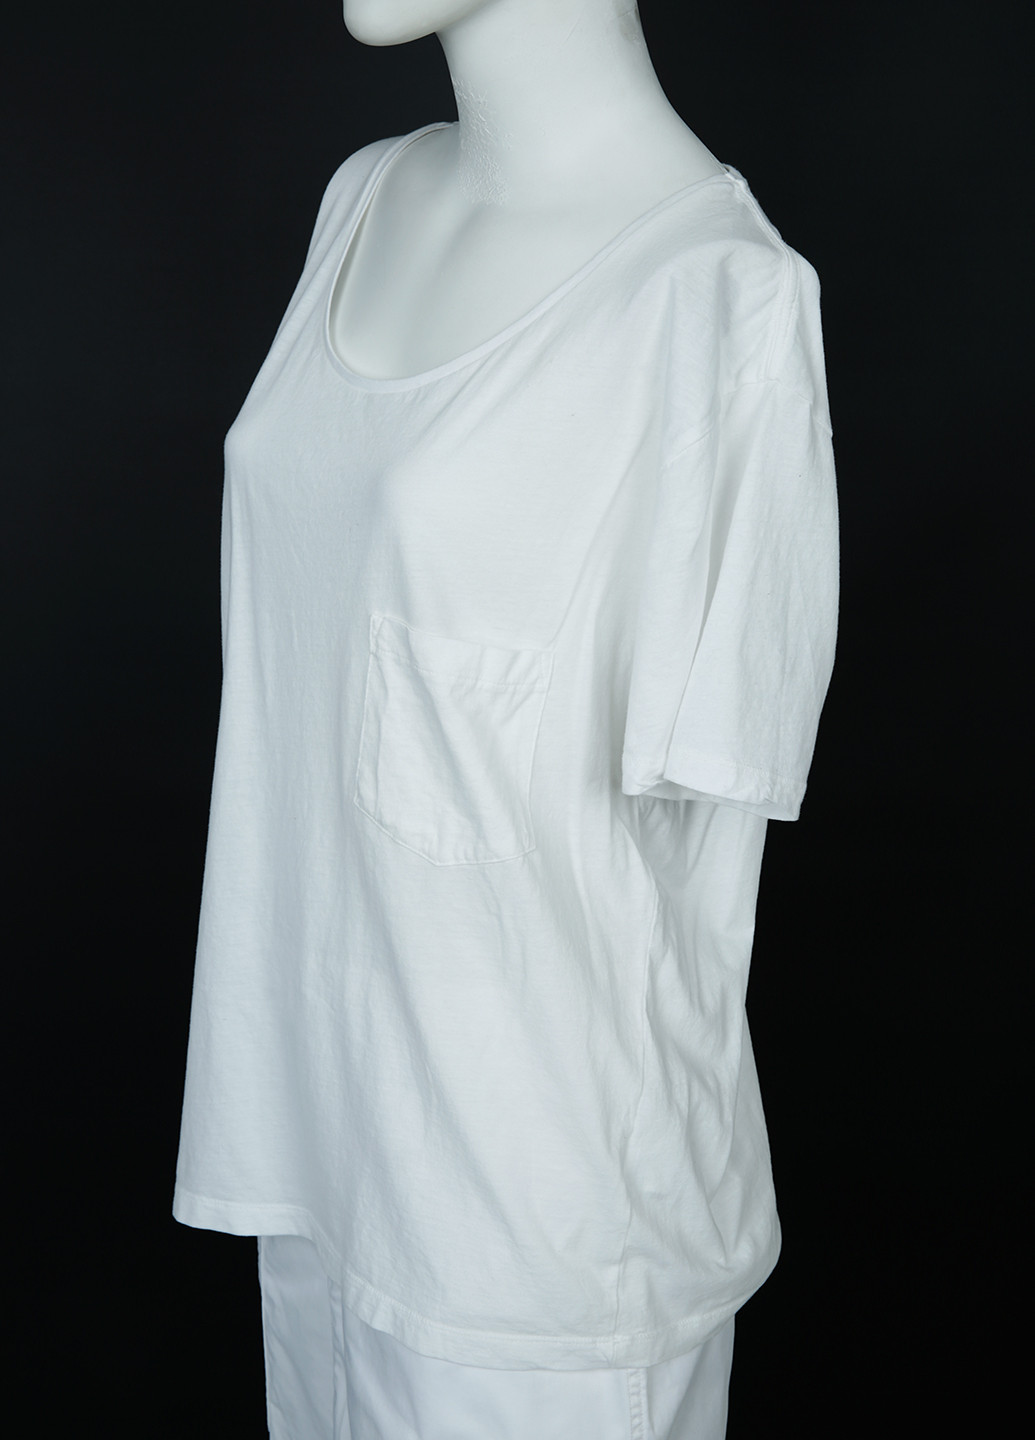 Белая летняя футболка Vailent Clothing